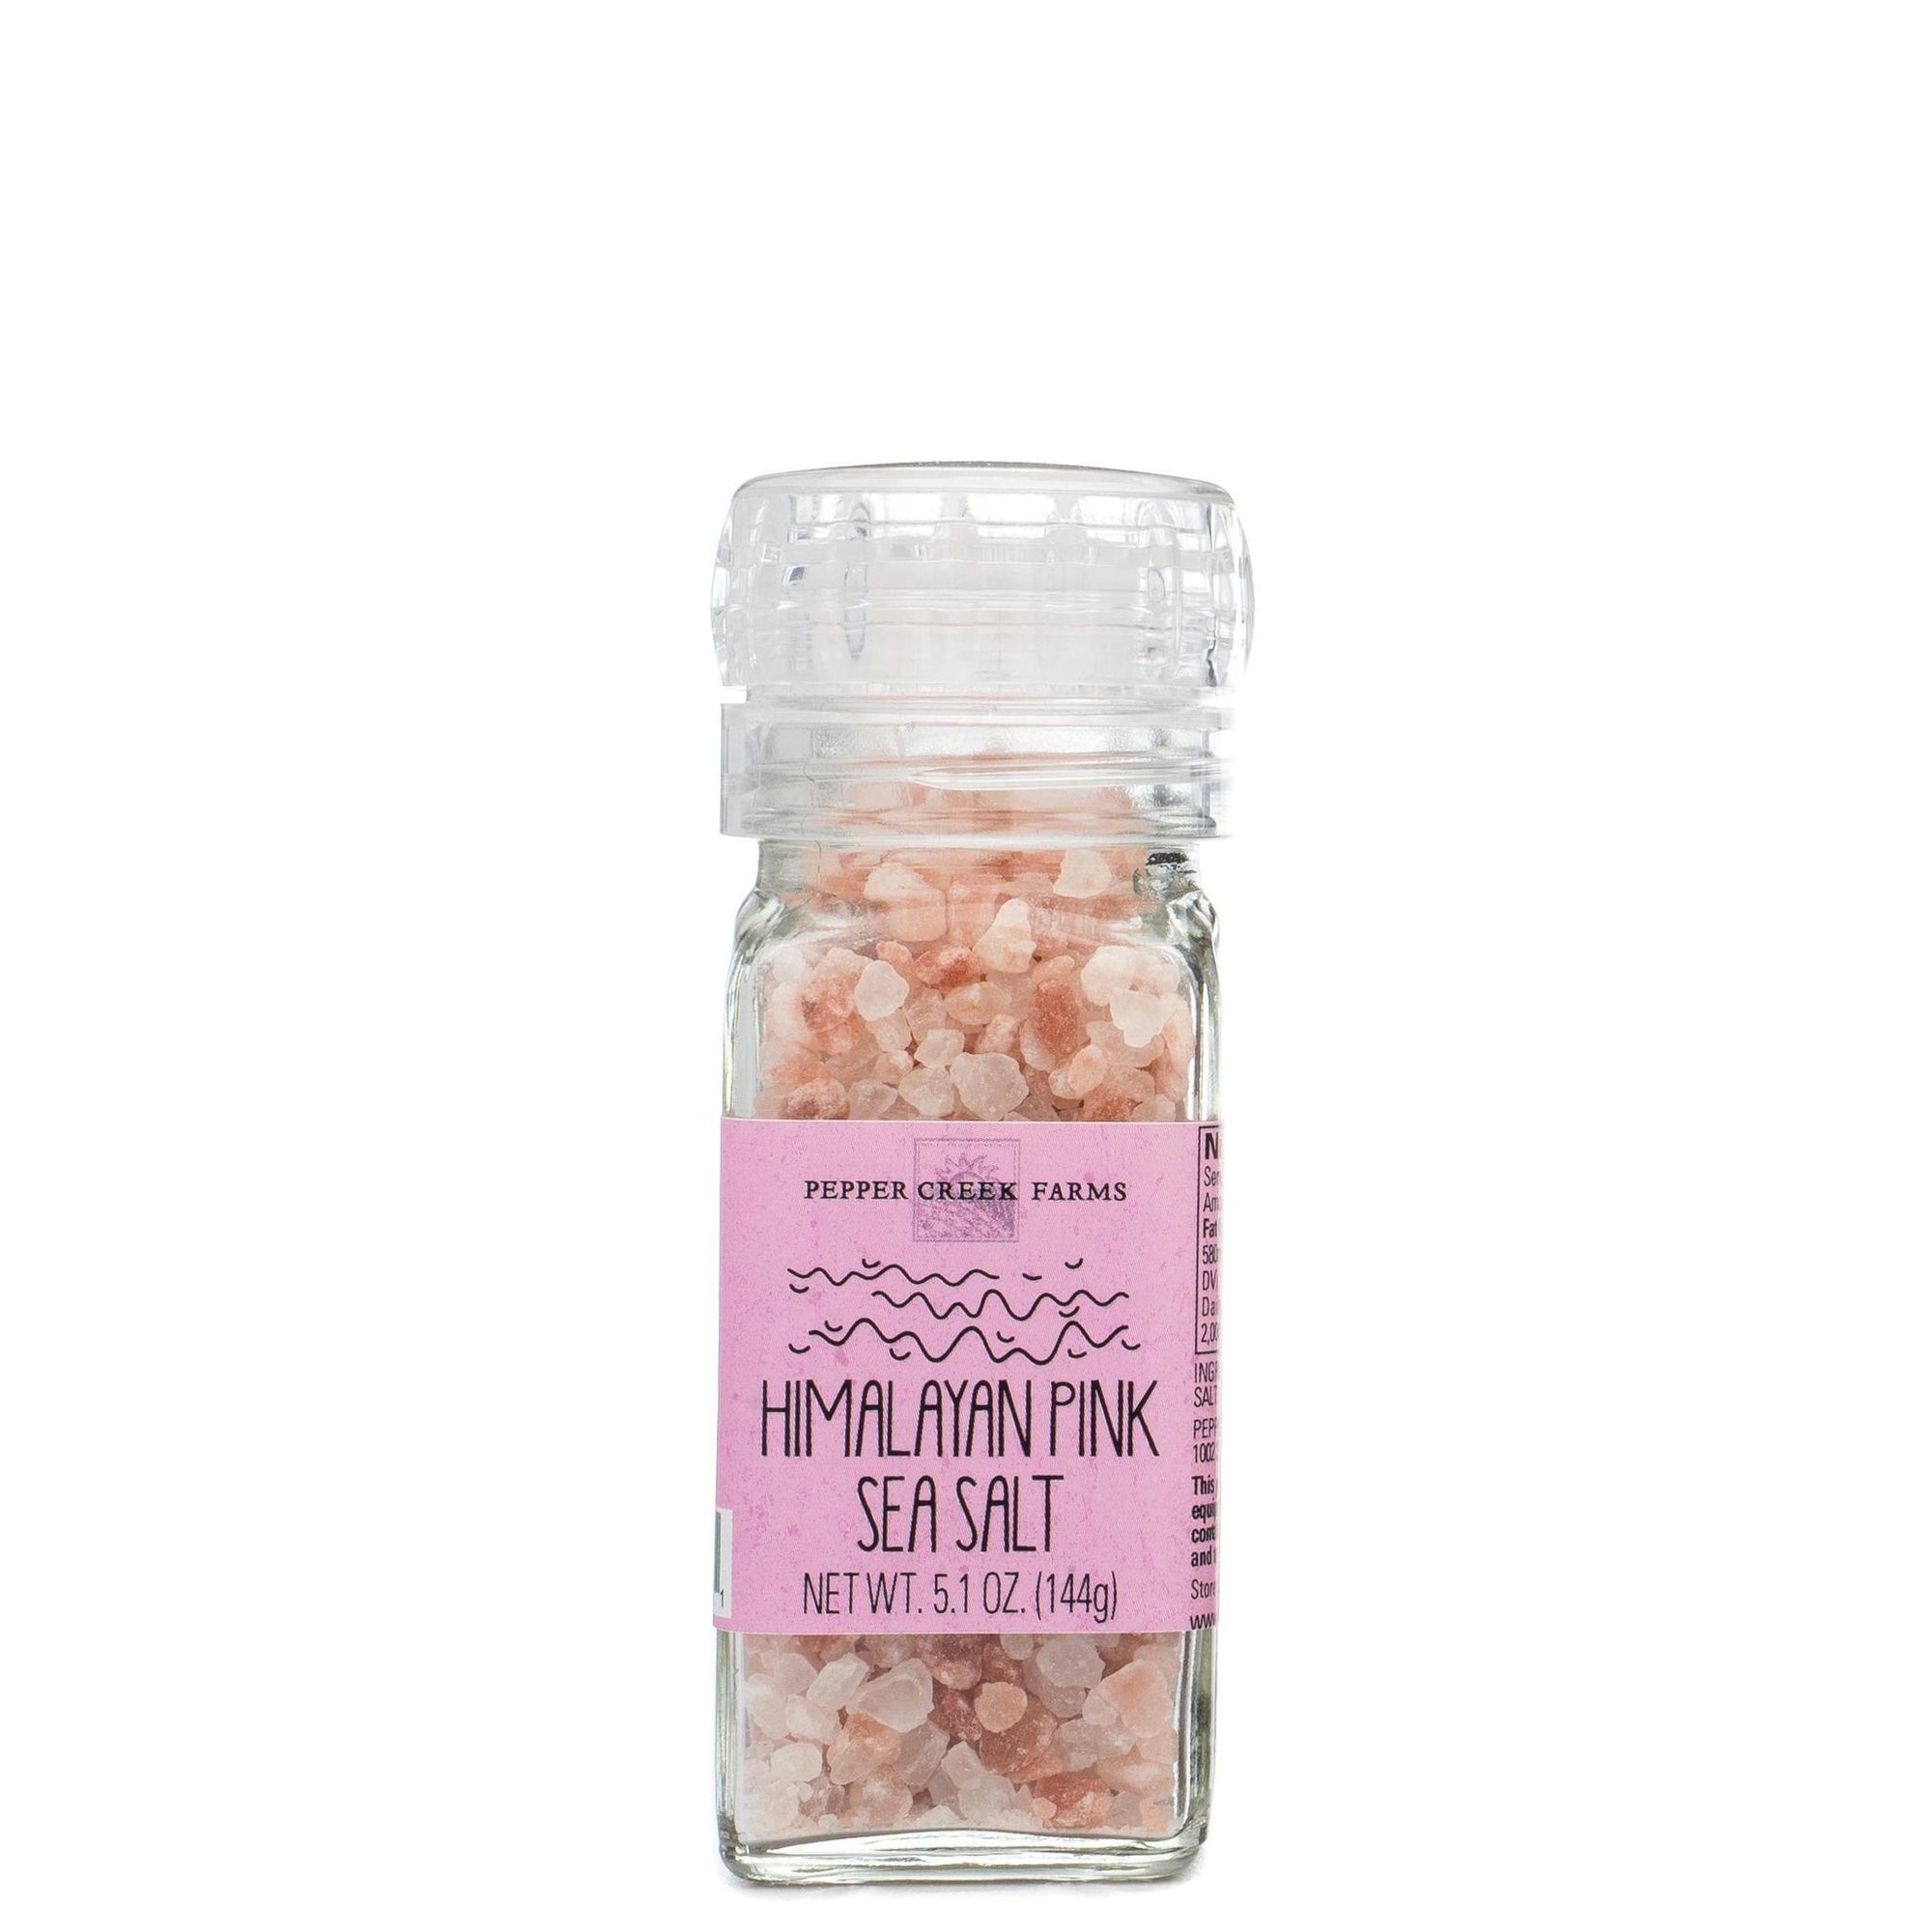 Himalayan Pink Sea Salt with Grinder